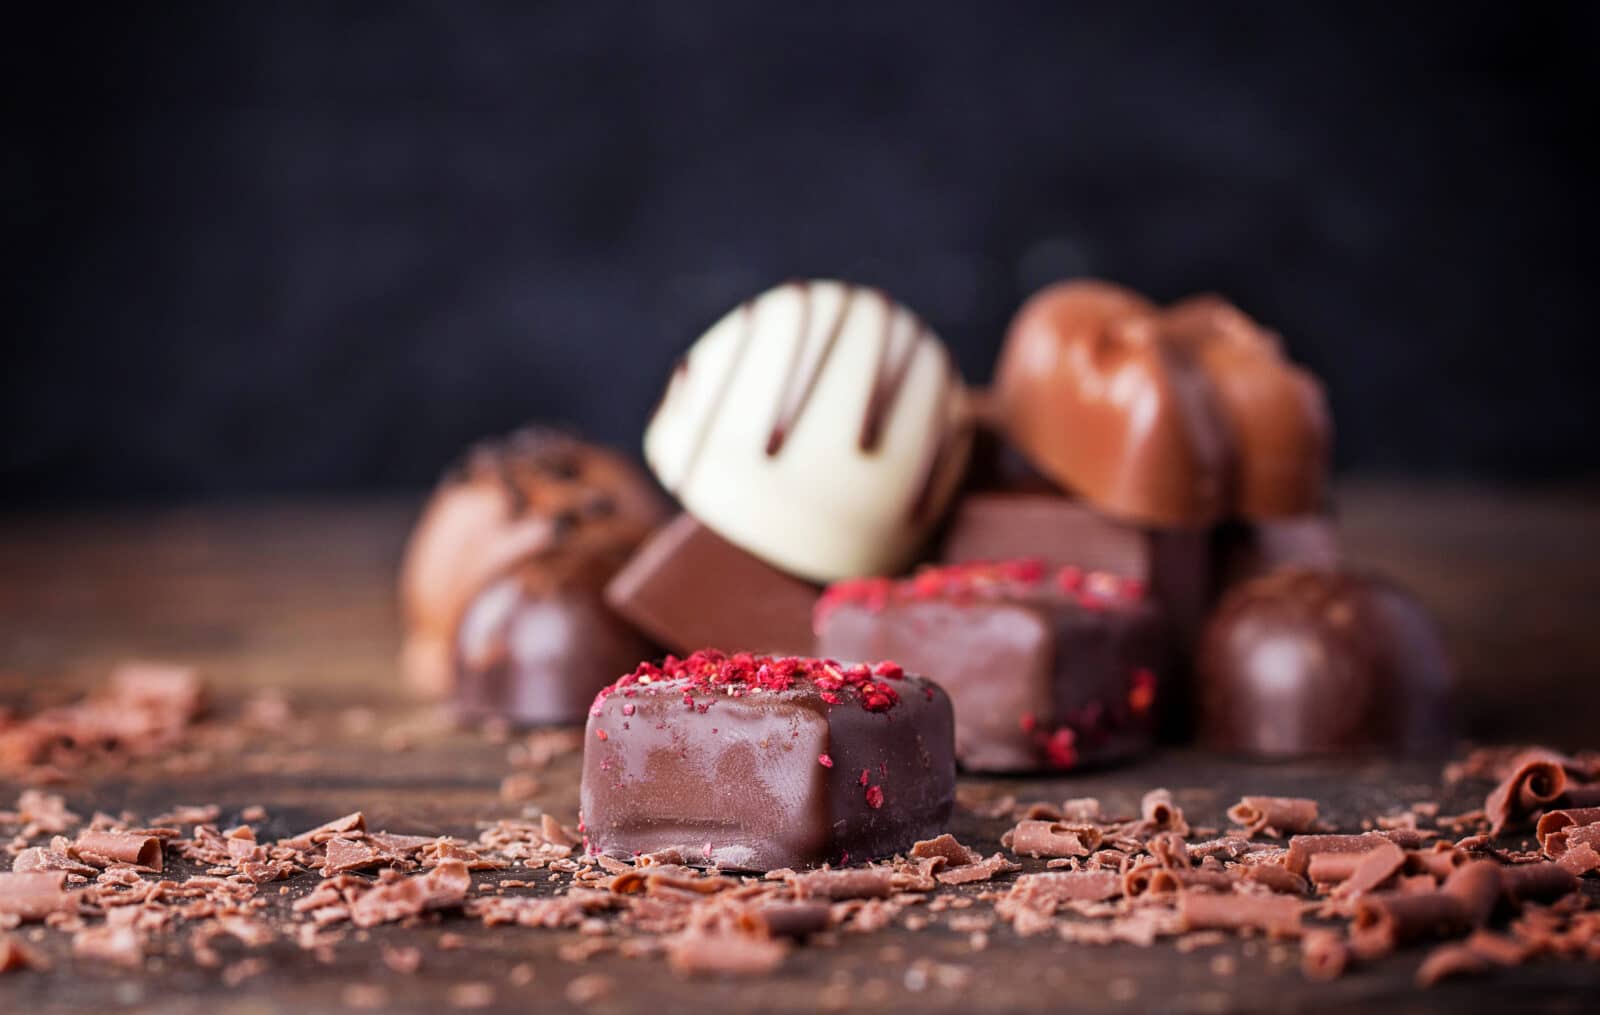 チョコレートの化学 – 食品科学者が語る、愛されるお菓子の味、食感、そして食材としての厄介な評判の由来